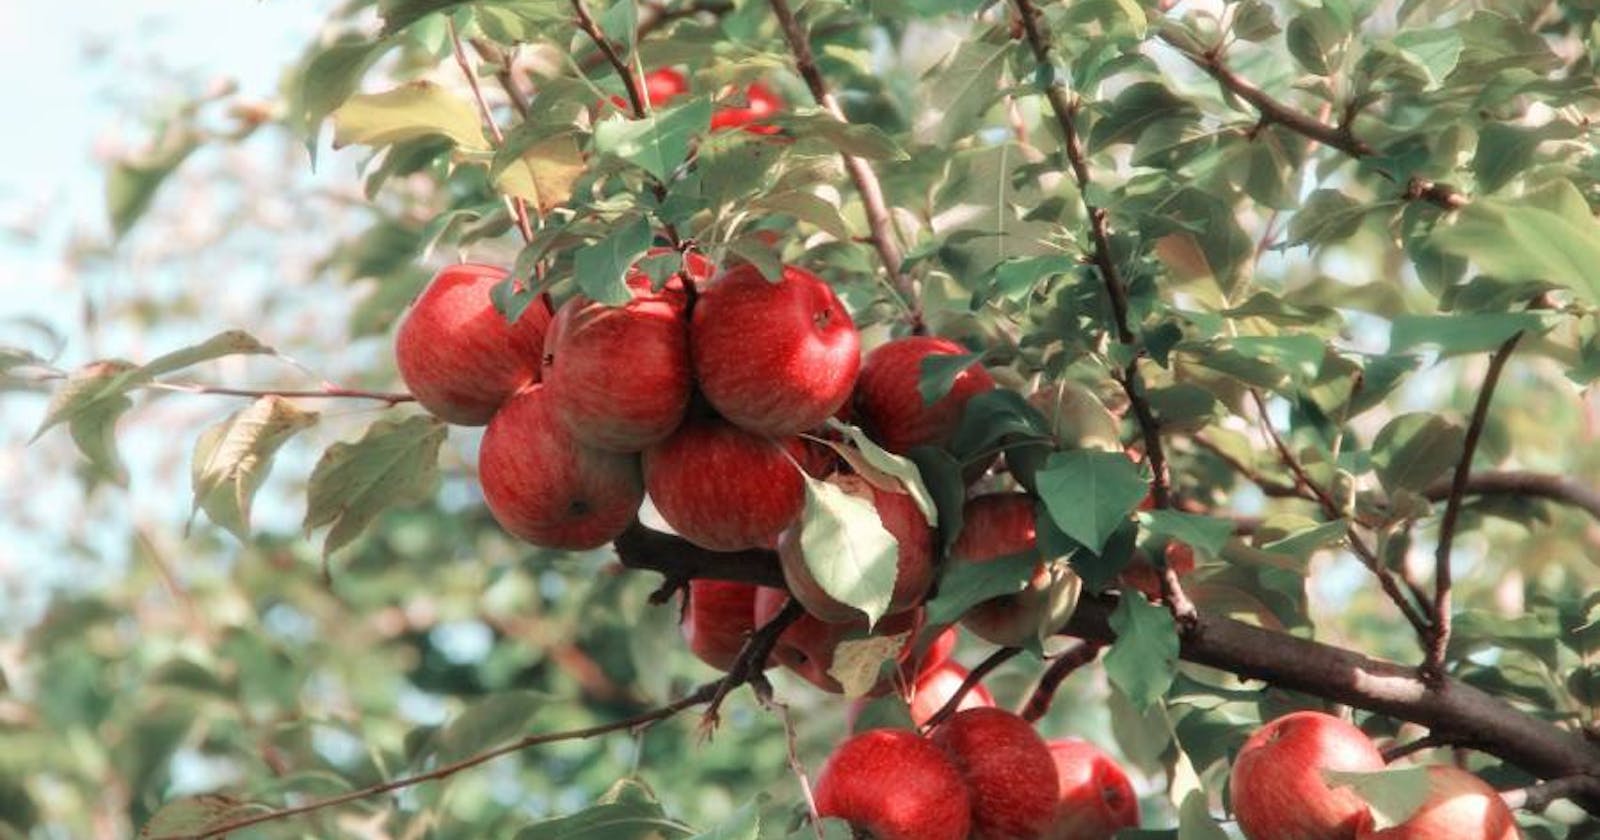 Stropirea cu score - metoda sigură și eficientă de combatere a dăunătorilor la pomii fructiferi